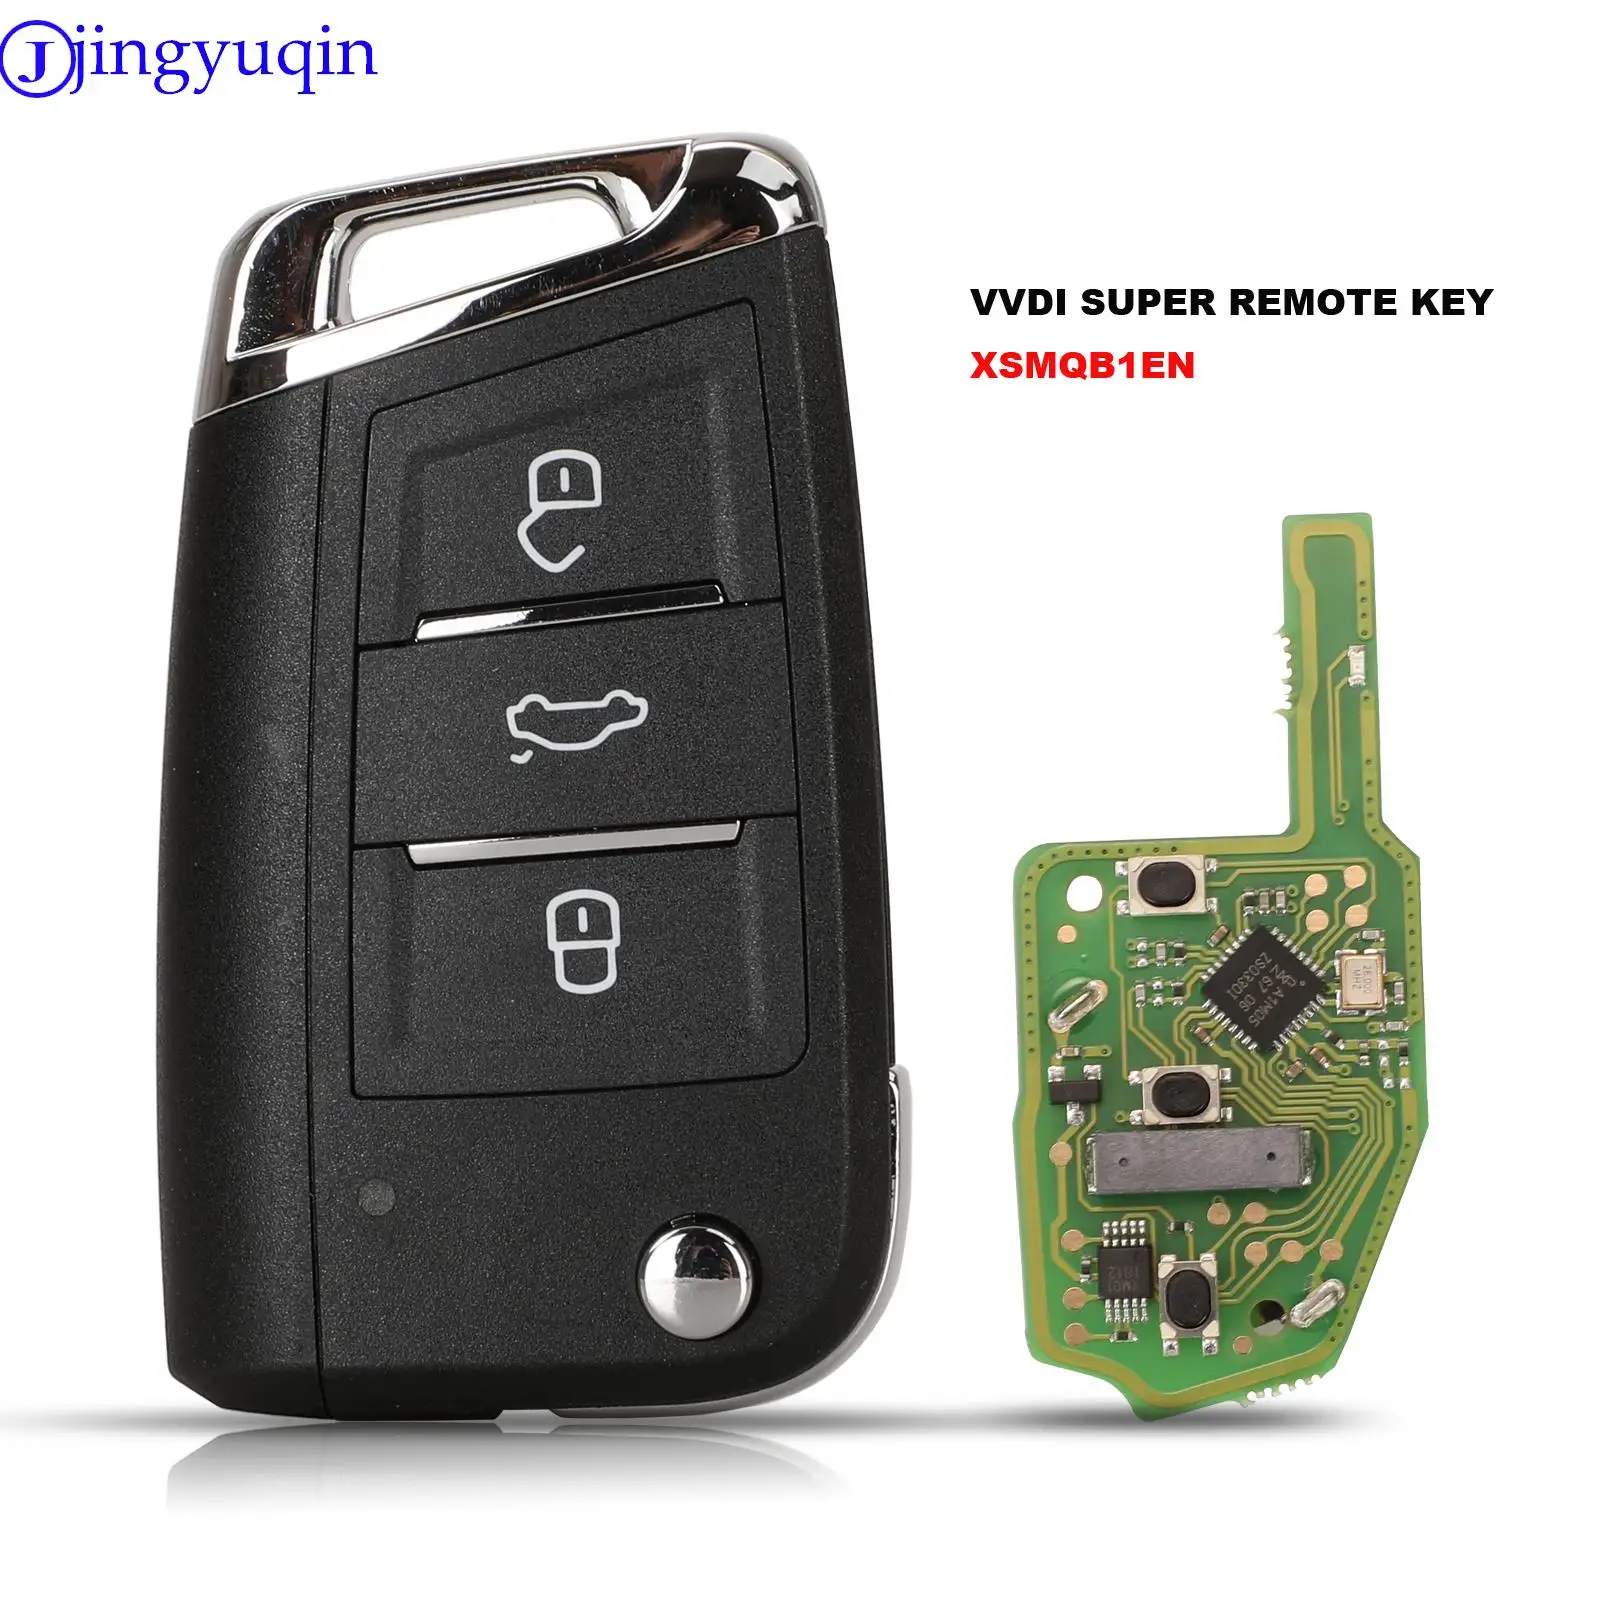 XHORSE jingyuqin VVDI Universal Remotes Smart Key with Proximity Function XSMQB1EN English Version